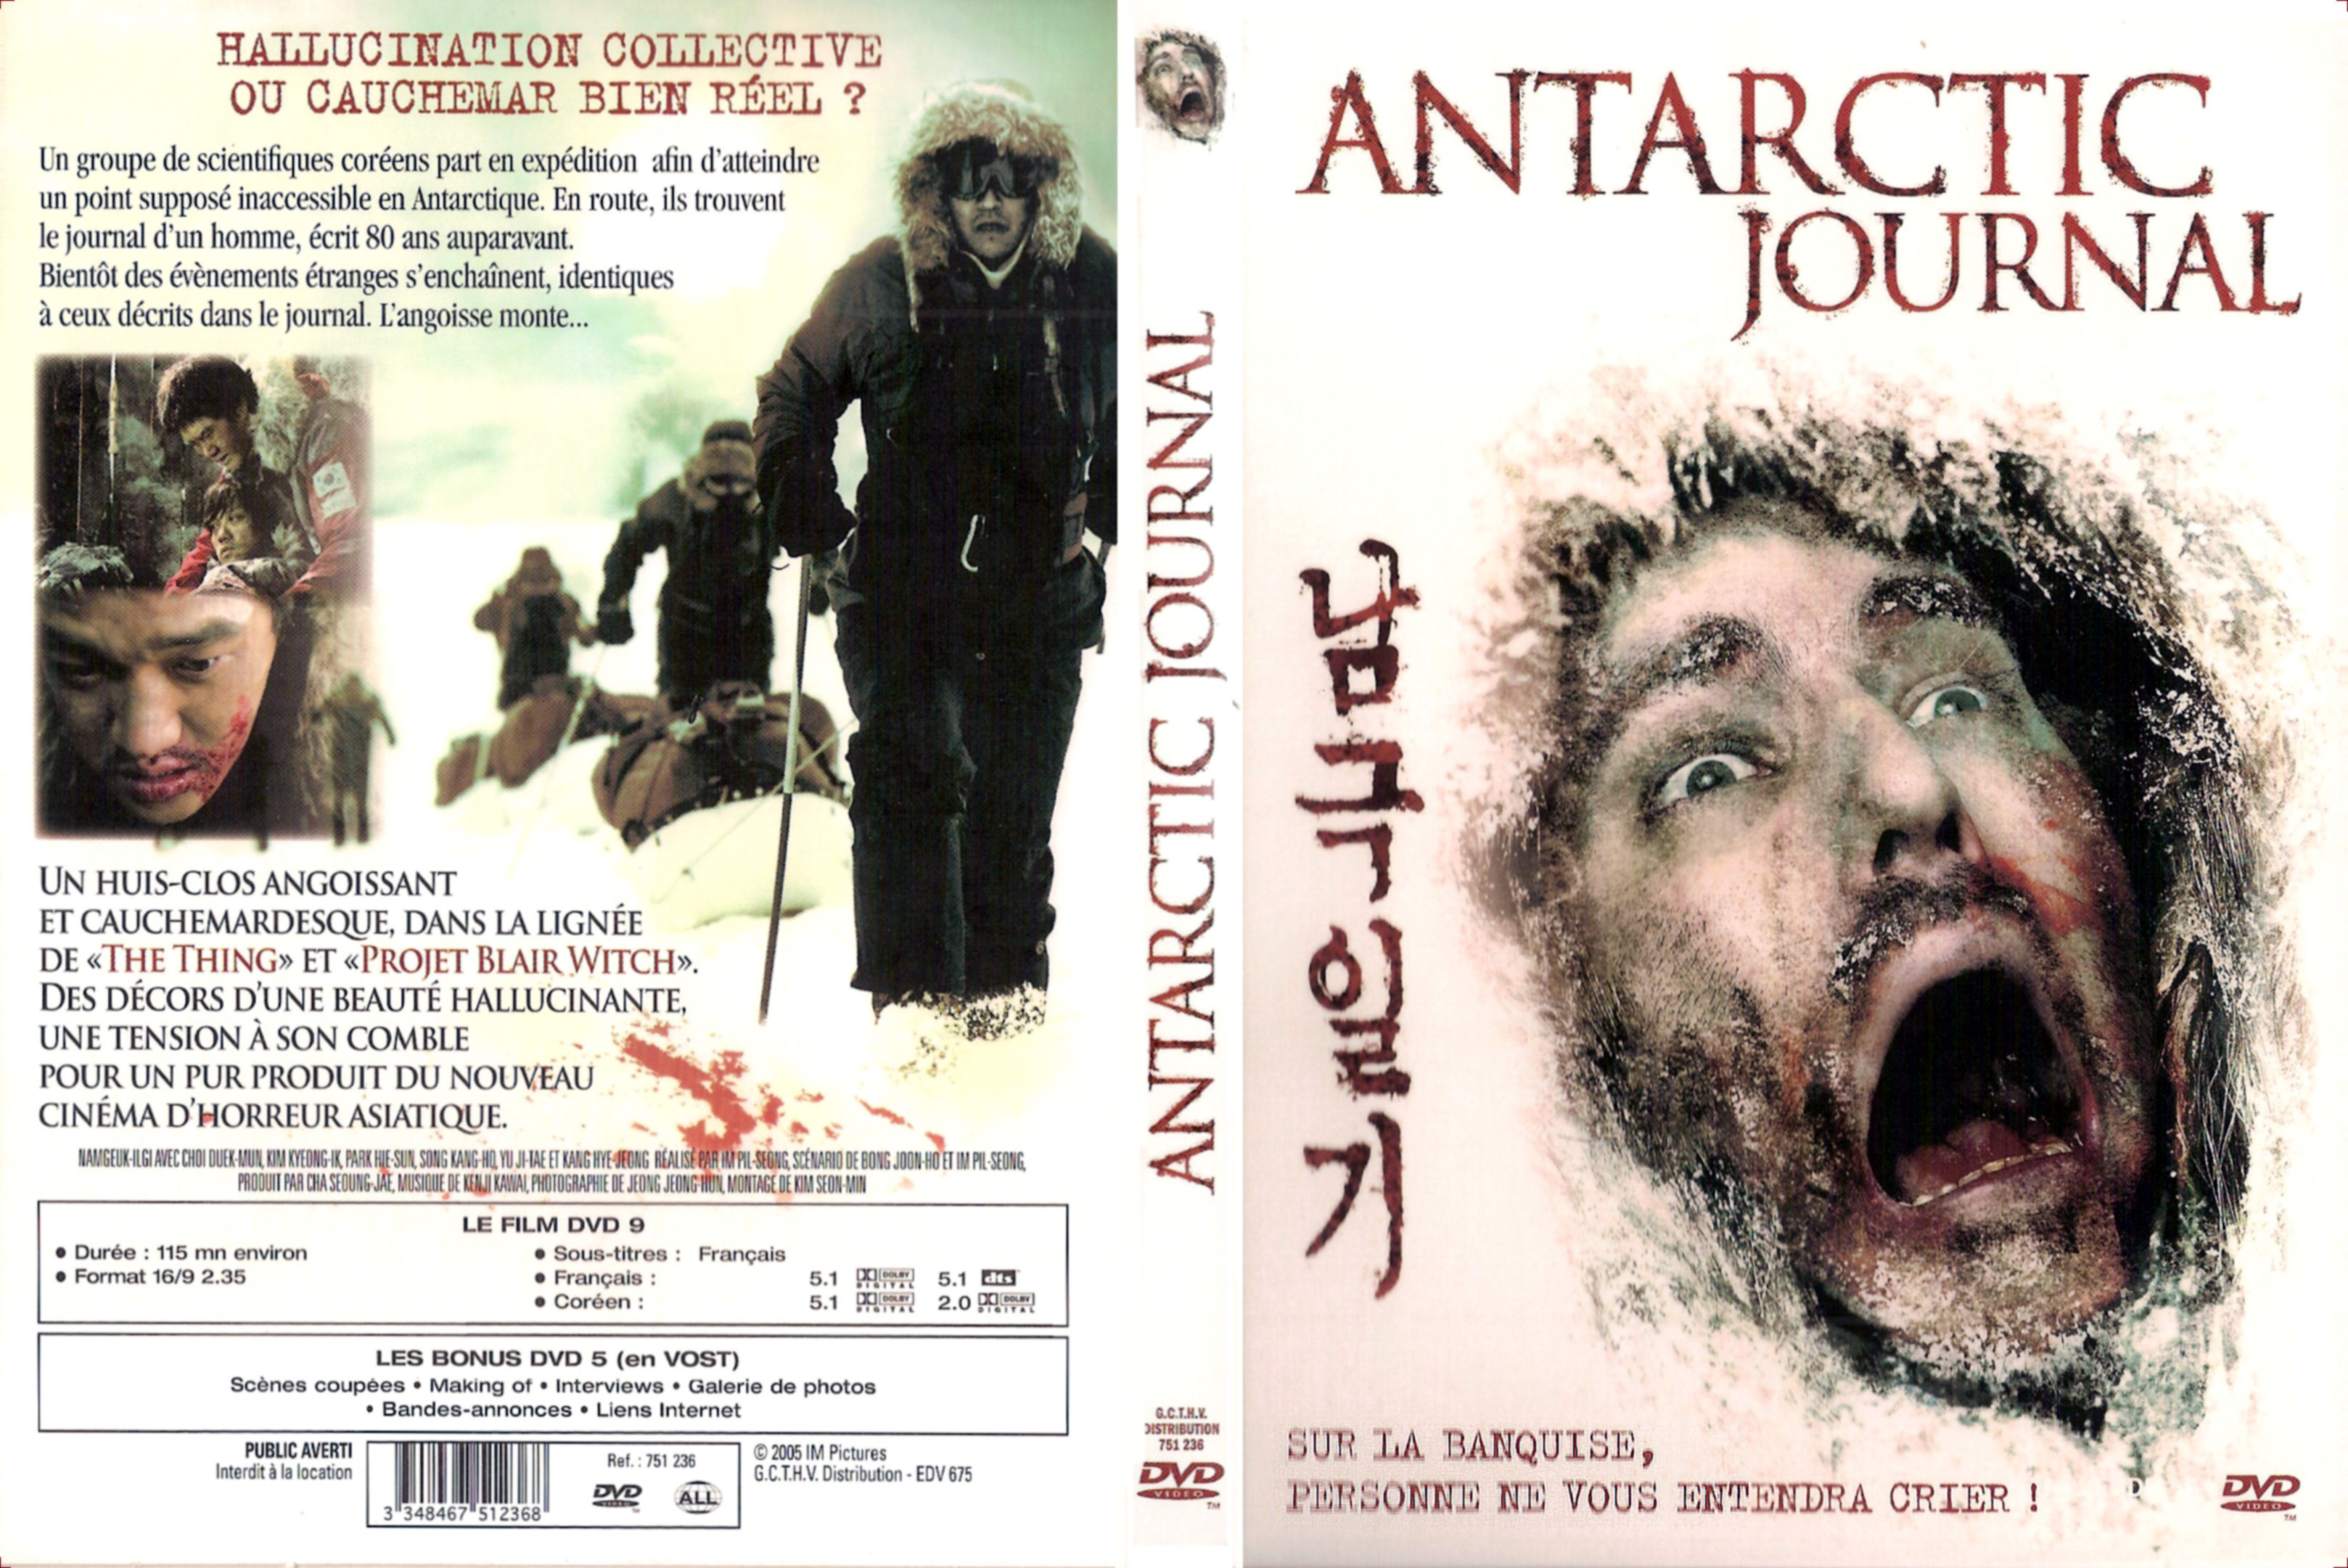 Jaquette DVD Antartic journal